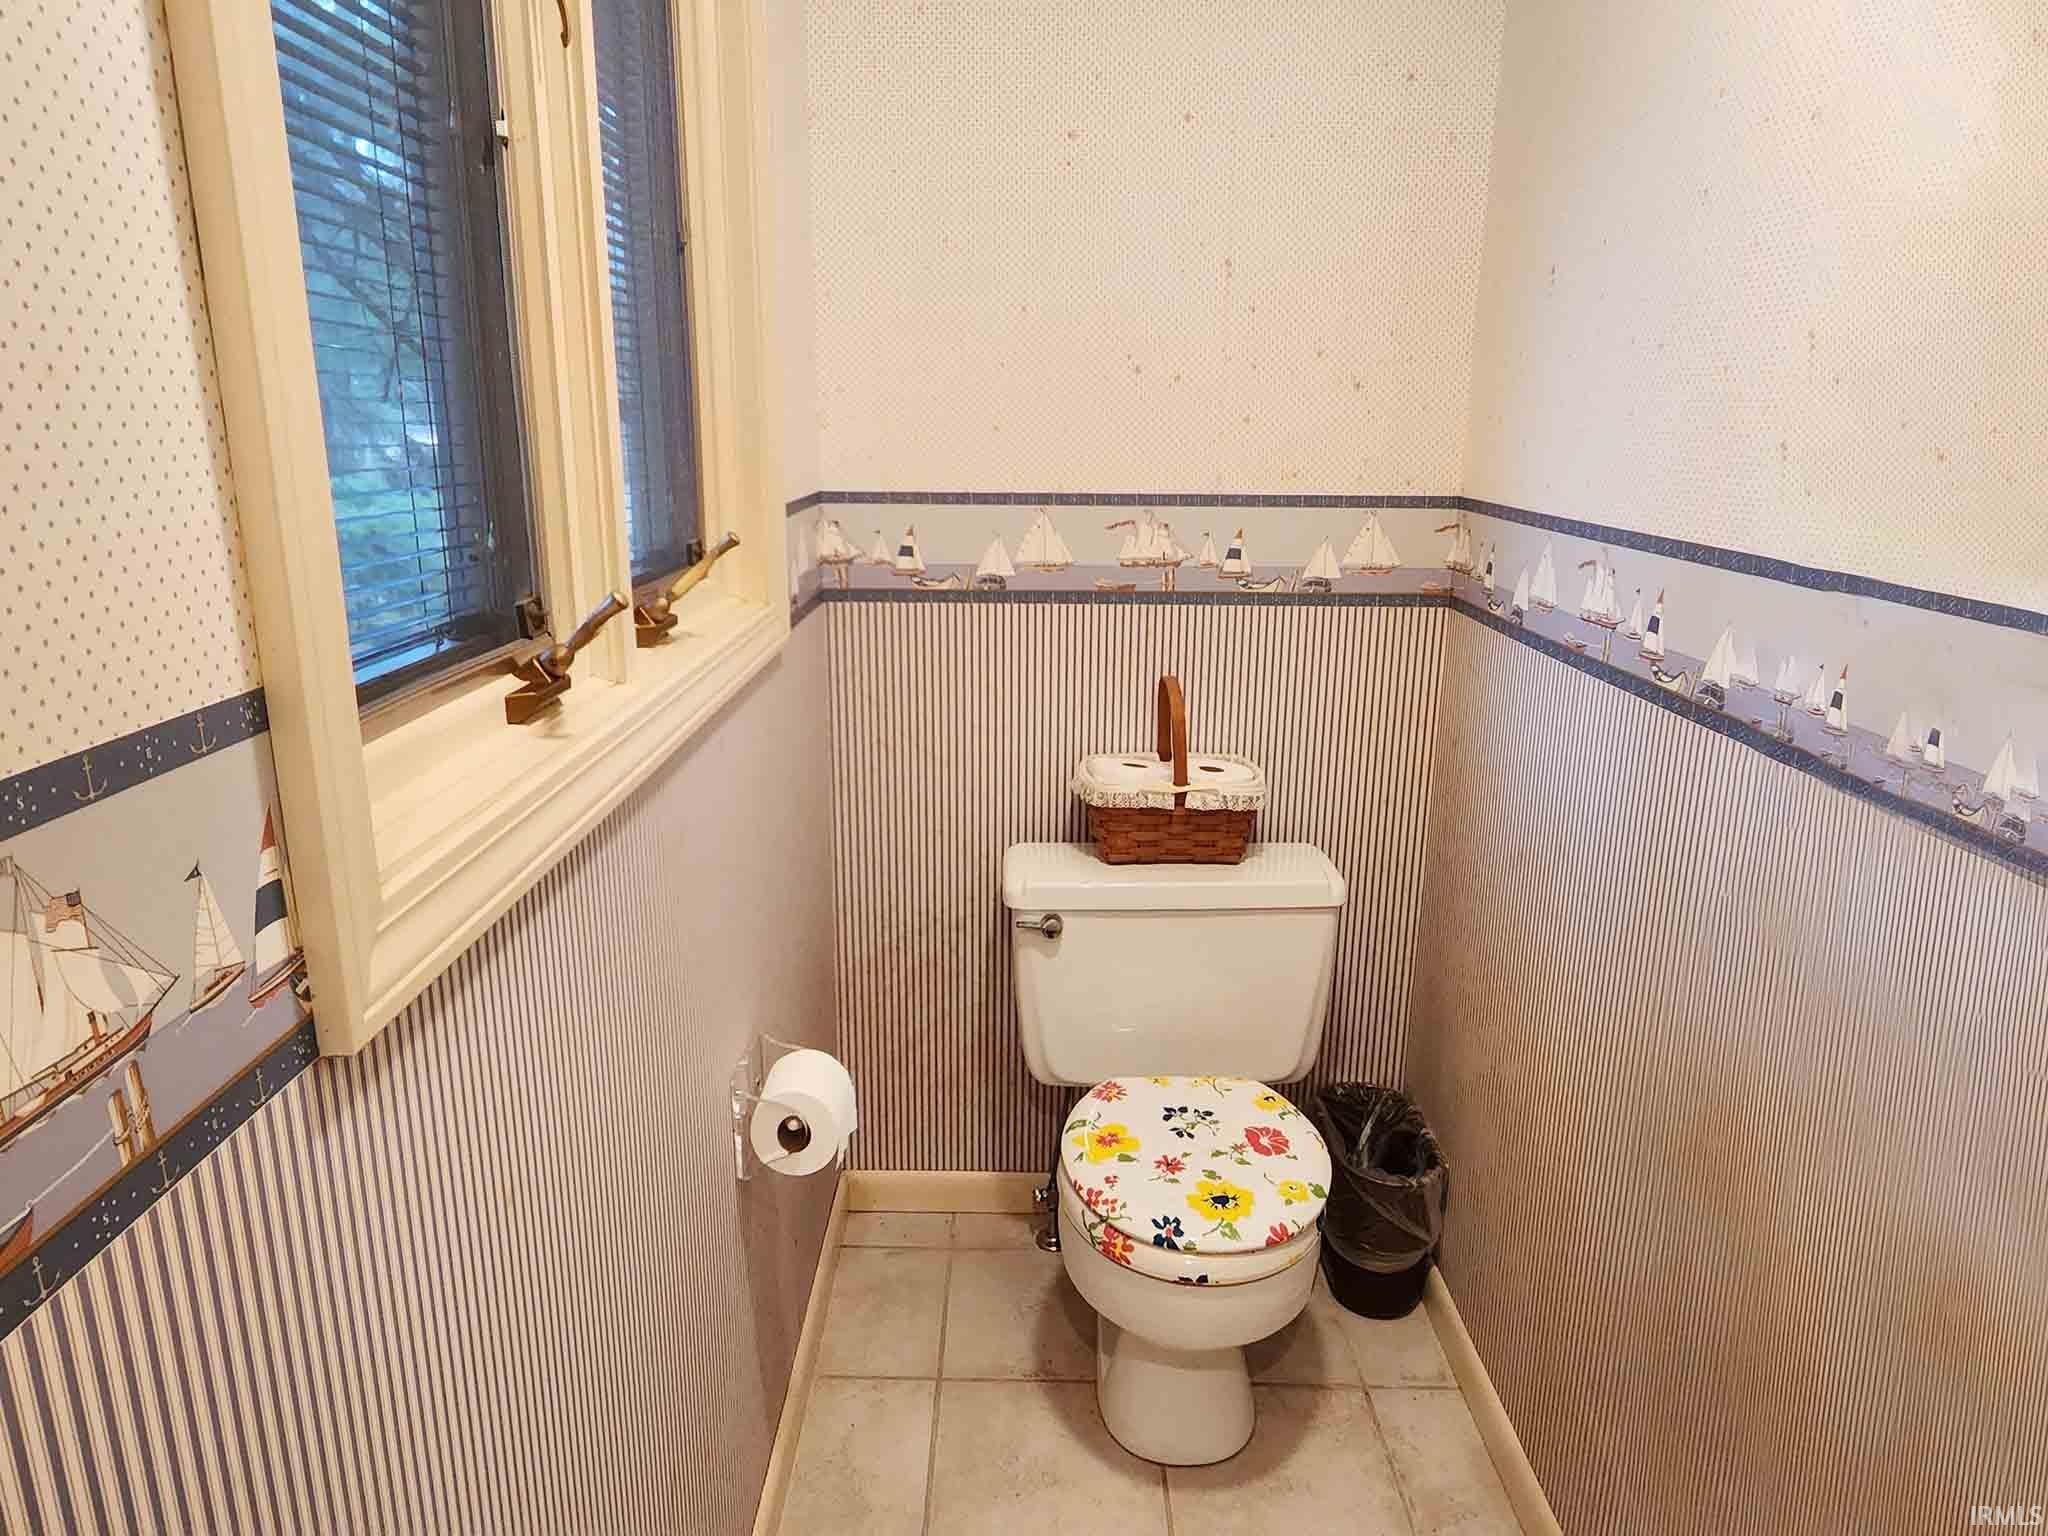 Upstairs full bathroom.